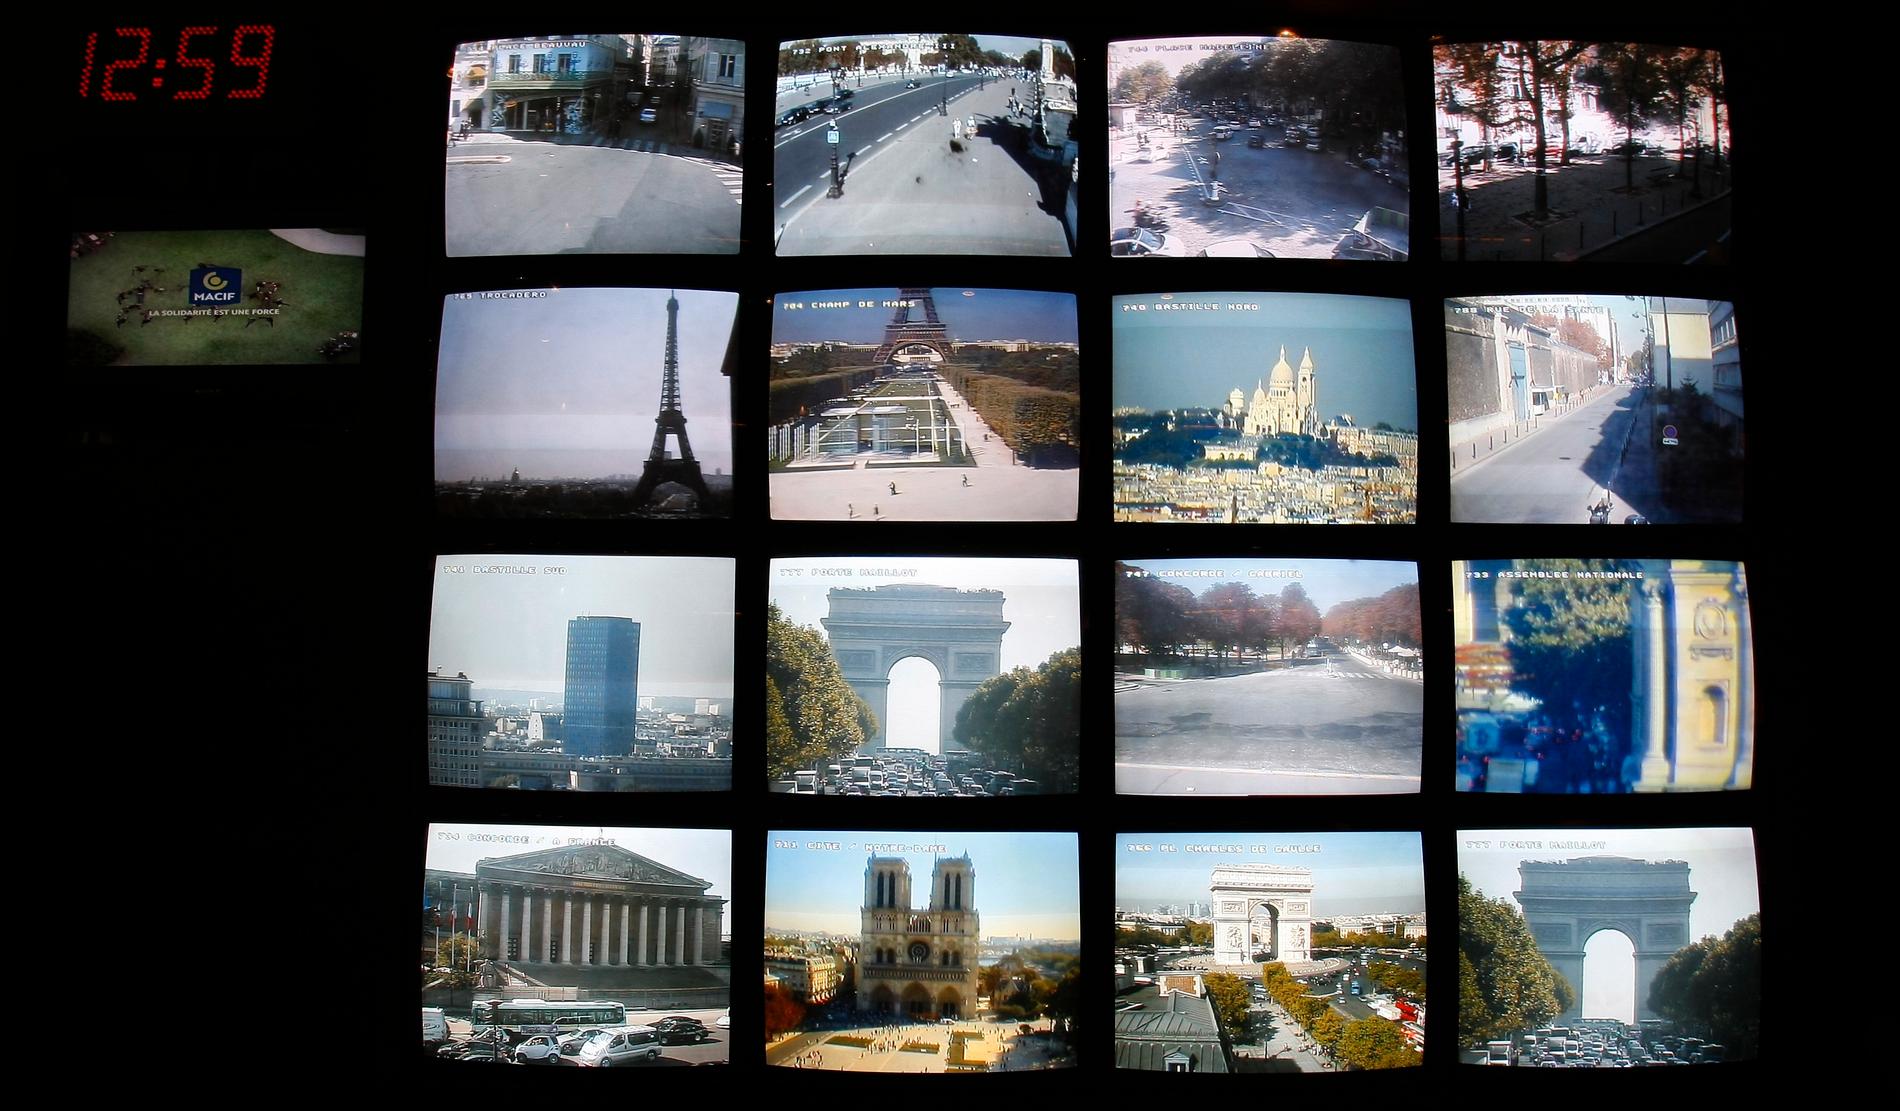 Bildskärmar visar olika turistmål i Paris som övervakas i en säkerhetscentral under jord i Frankrikes huvudstad.